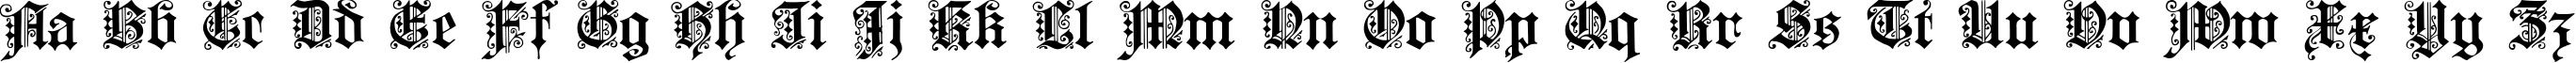 Пример написания английского алфавита шрифтом Fortuna Gothic FlorishC